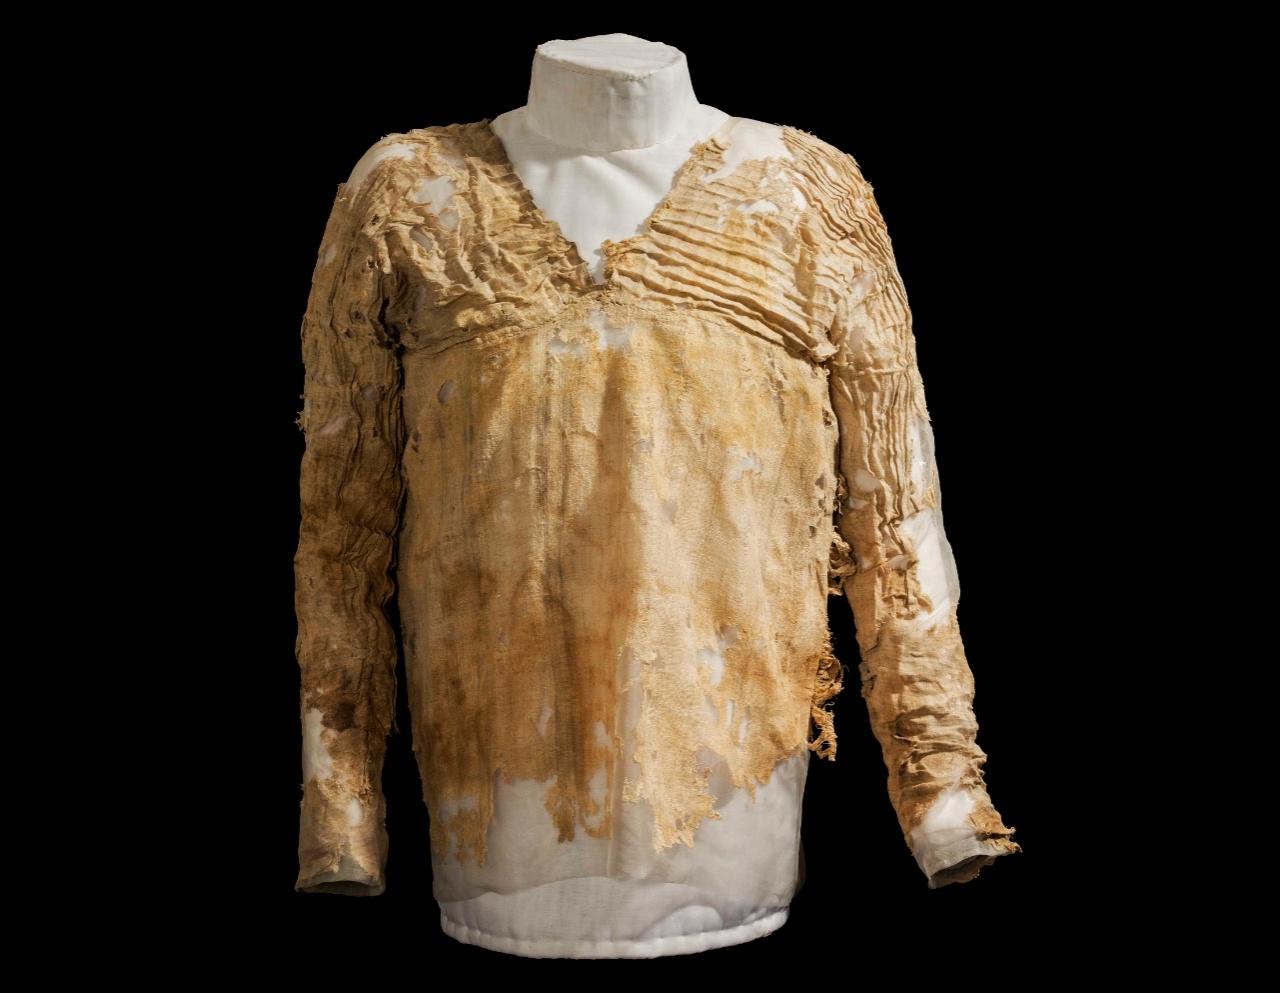 Historia e pabesueshme e veshjes më të vjetër në botë nga Egjipti që është më shumë se 5,000 vjeç 1